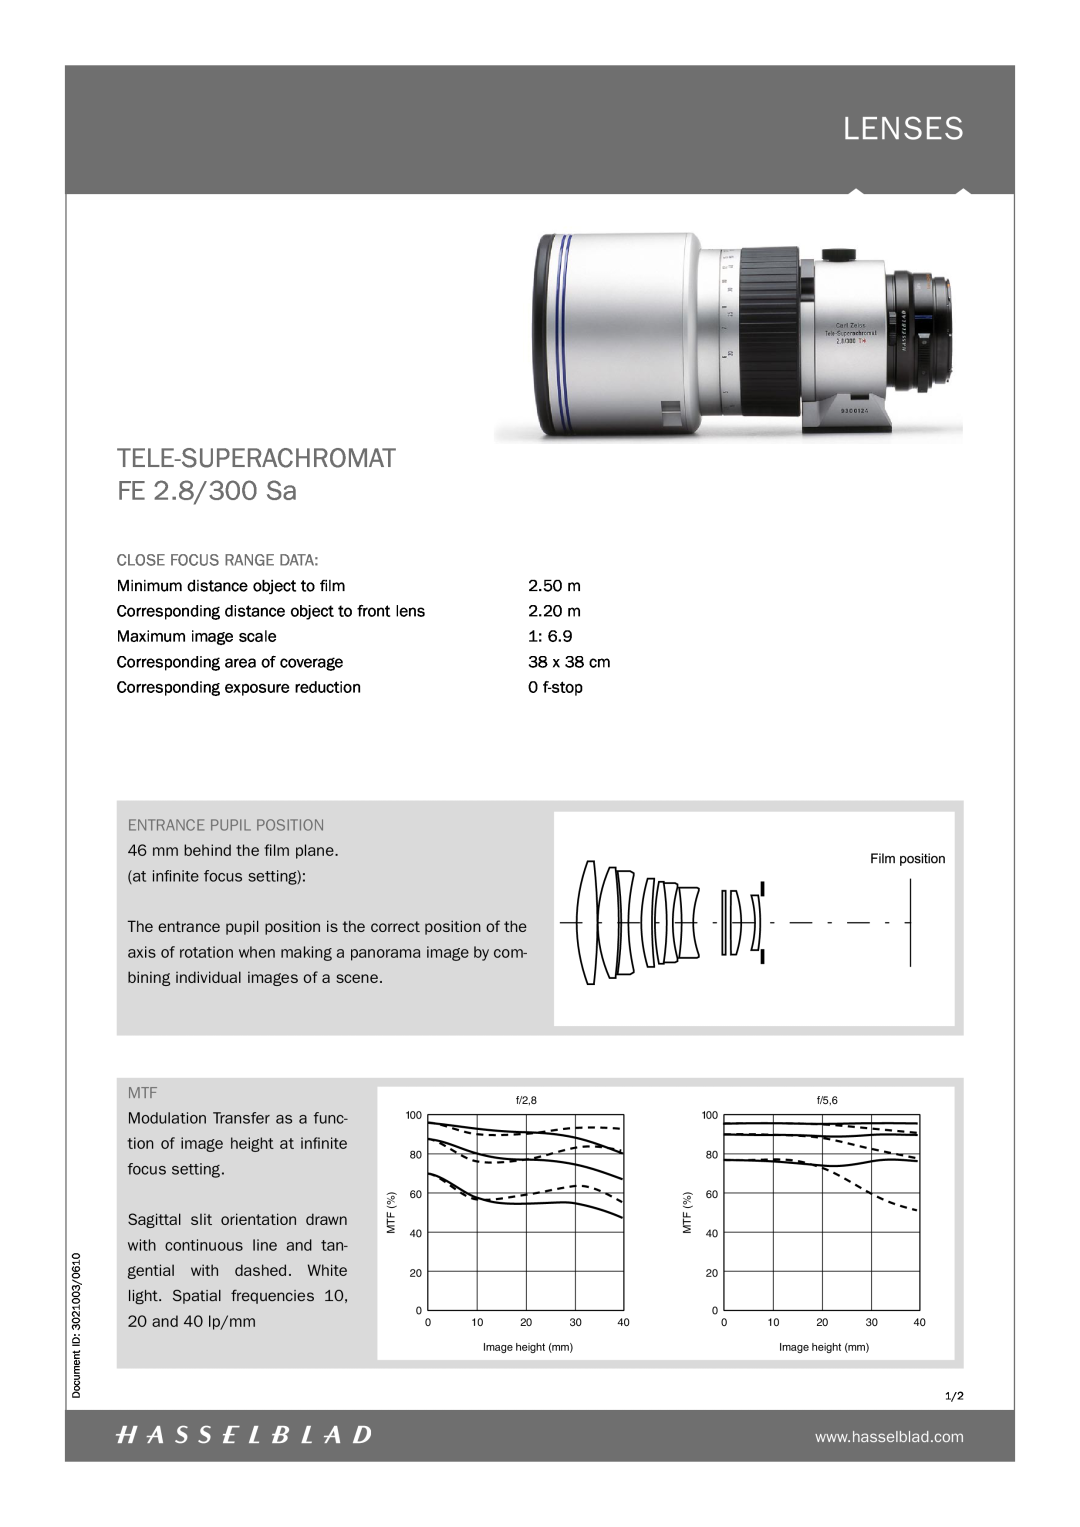 Hasselblad manual Lenses, TELE-SUPERACHROMAT FE 2.8/300 Sa, Close Focus Range Data 